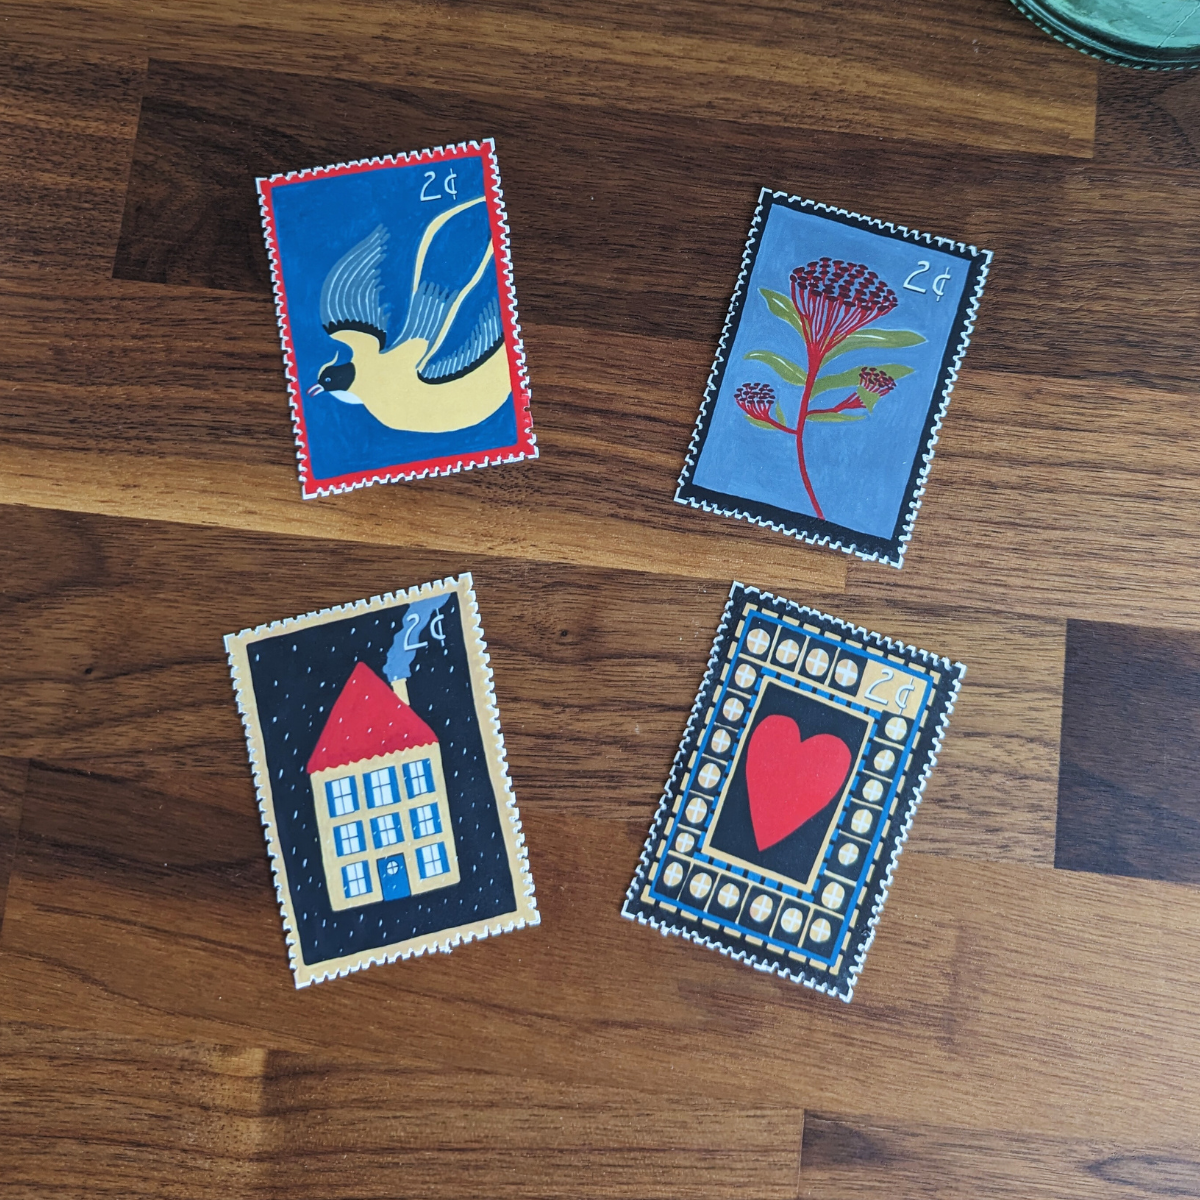 Ces 4 autocollants rétro inspirés de vieux timbres vintage sont parfaits pour décorer n'importe quel objet.